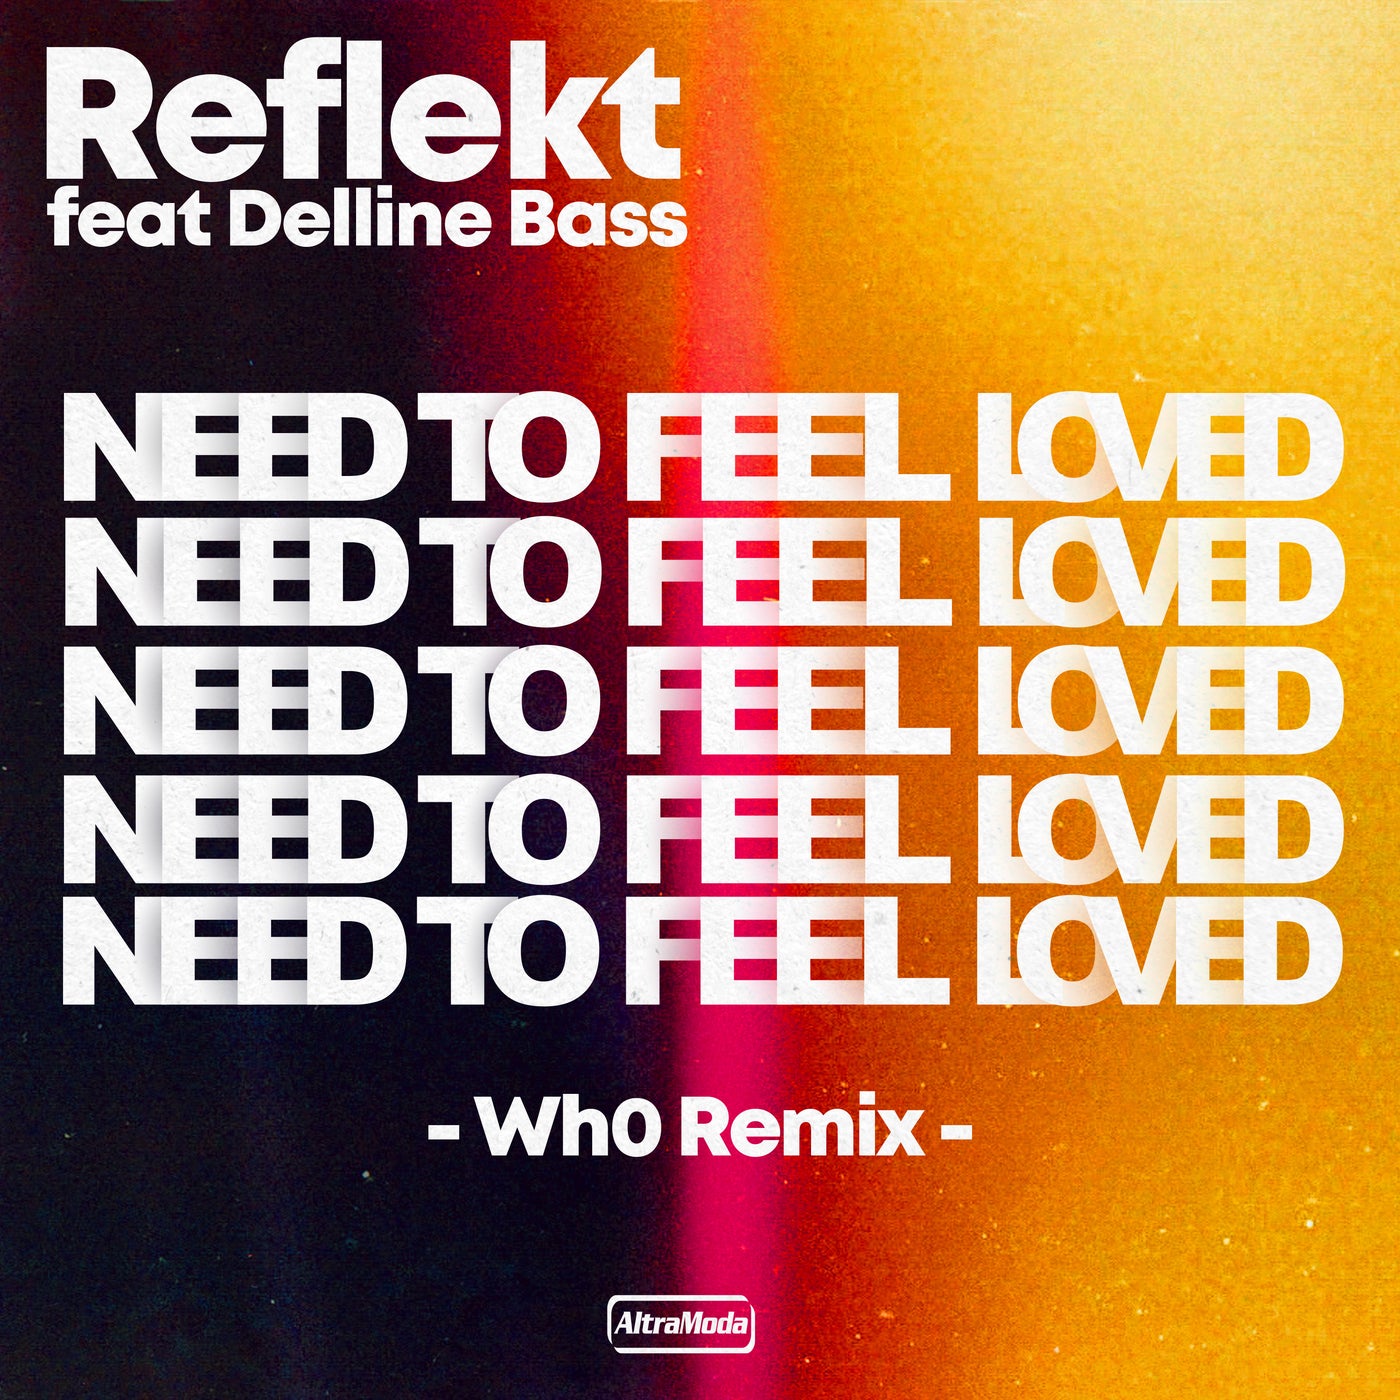 Reflekt delline need to feel loved. Reflekt featuring Delline Bass - need to feel Love. Reflekt ft. Delline Bass. Reflekt need to feel Loved. Reflekt_featuring.